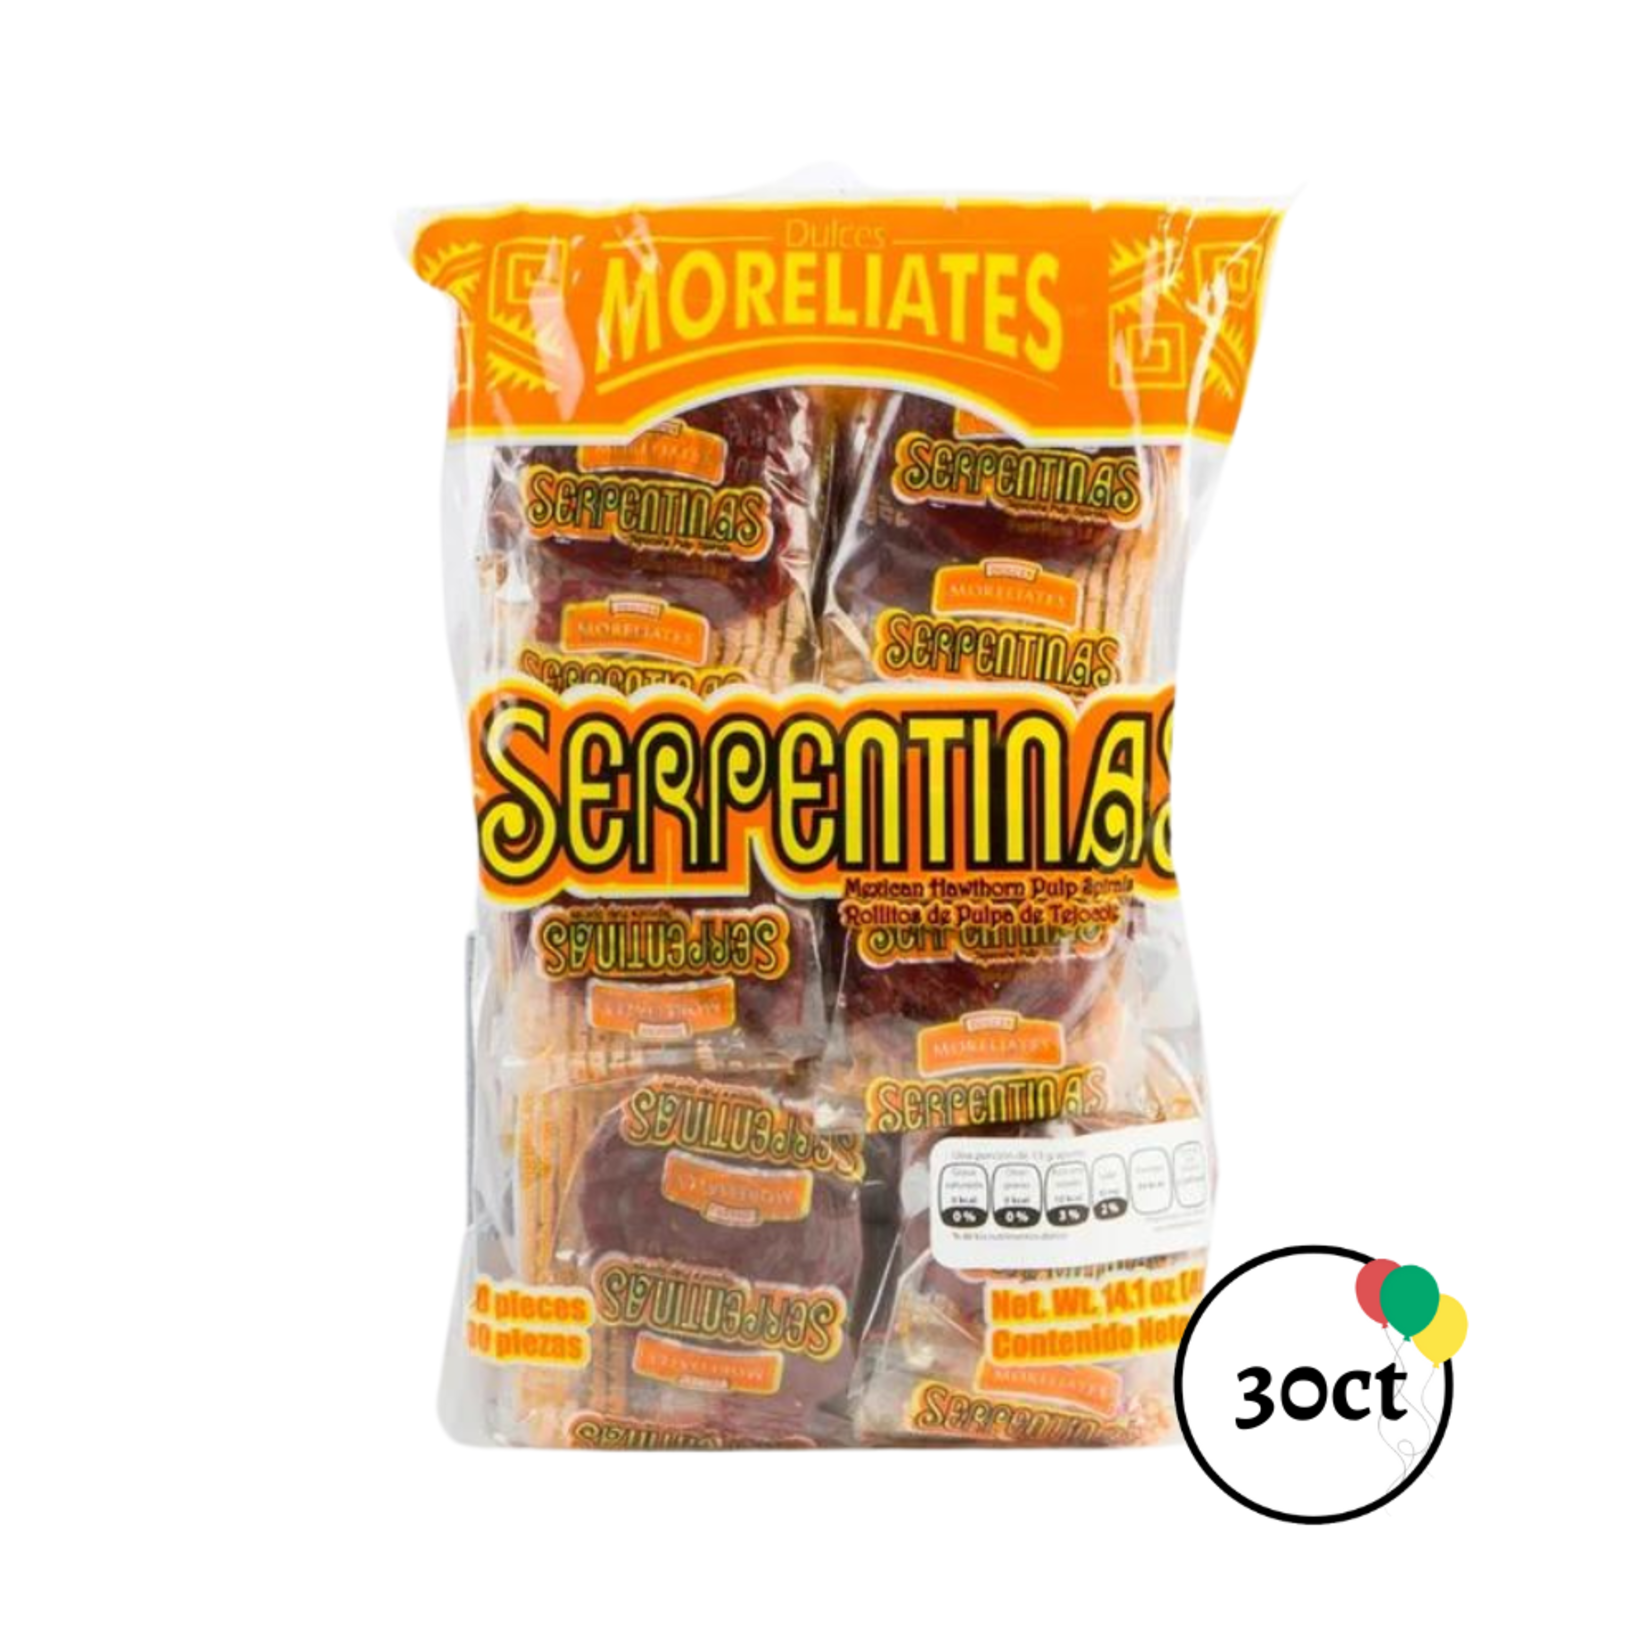 Dulces Moreliates Moreliates Serpentinas 30ct